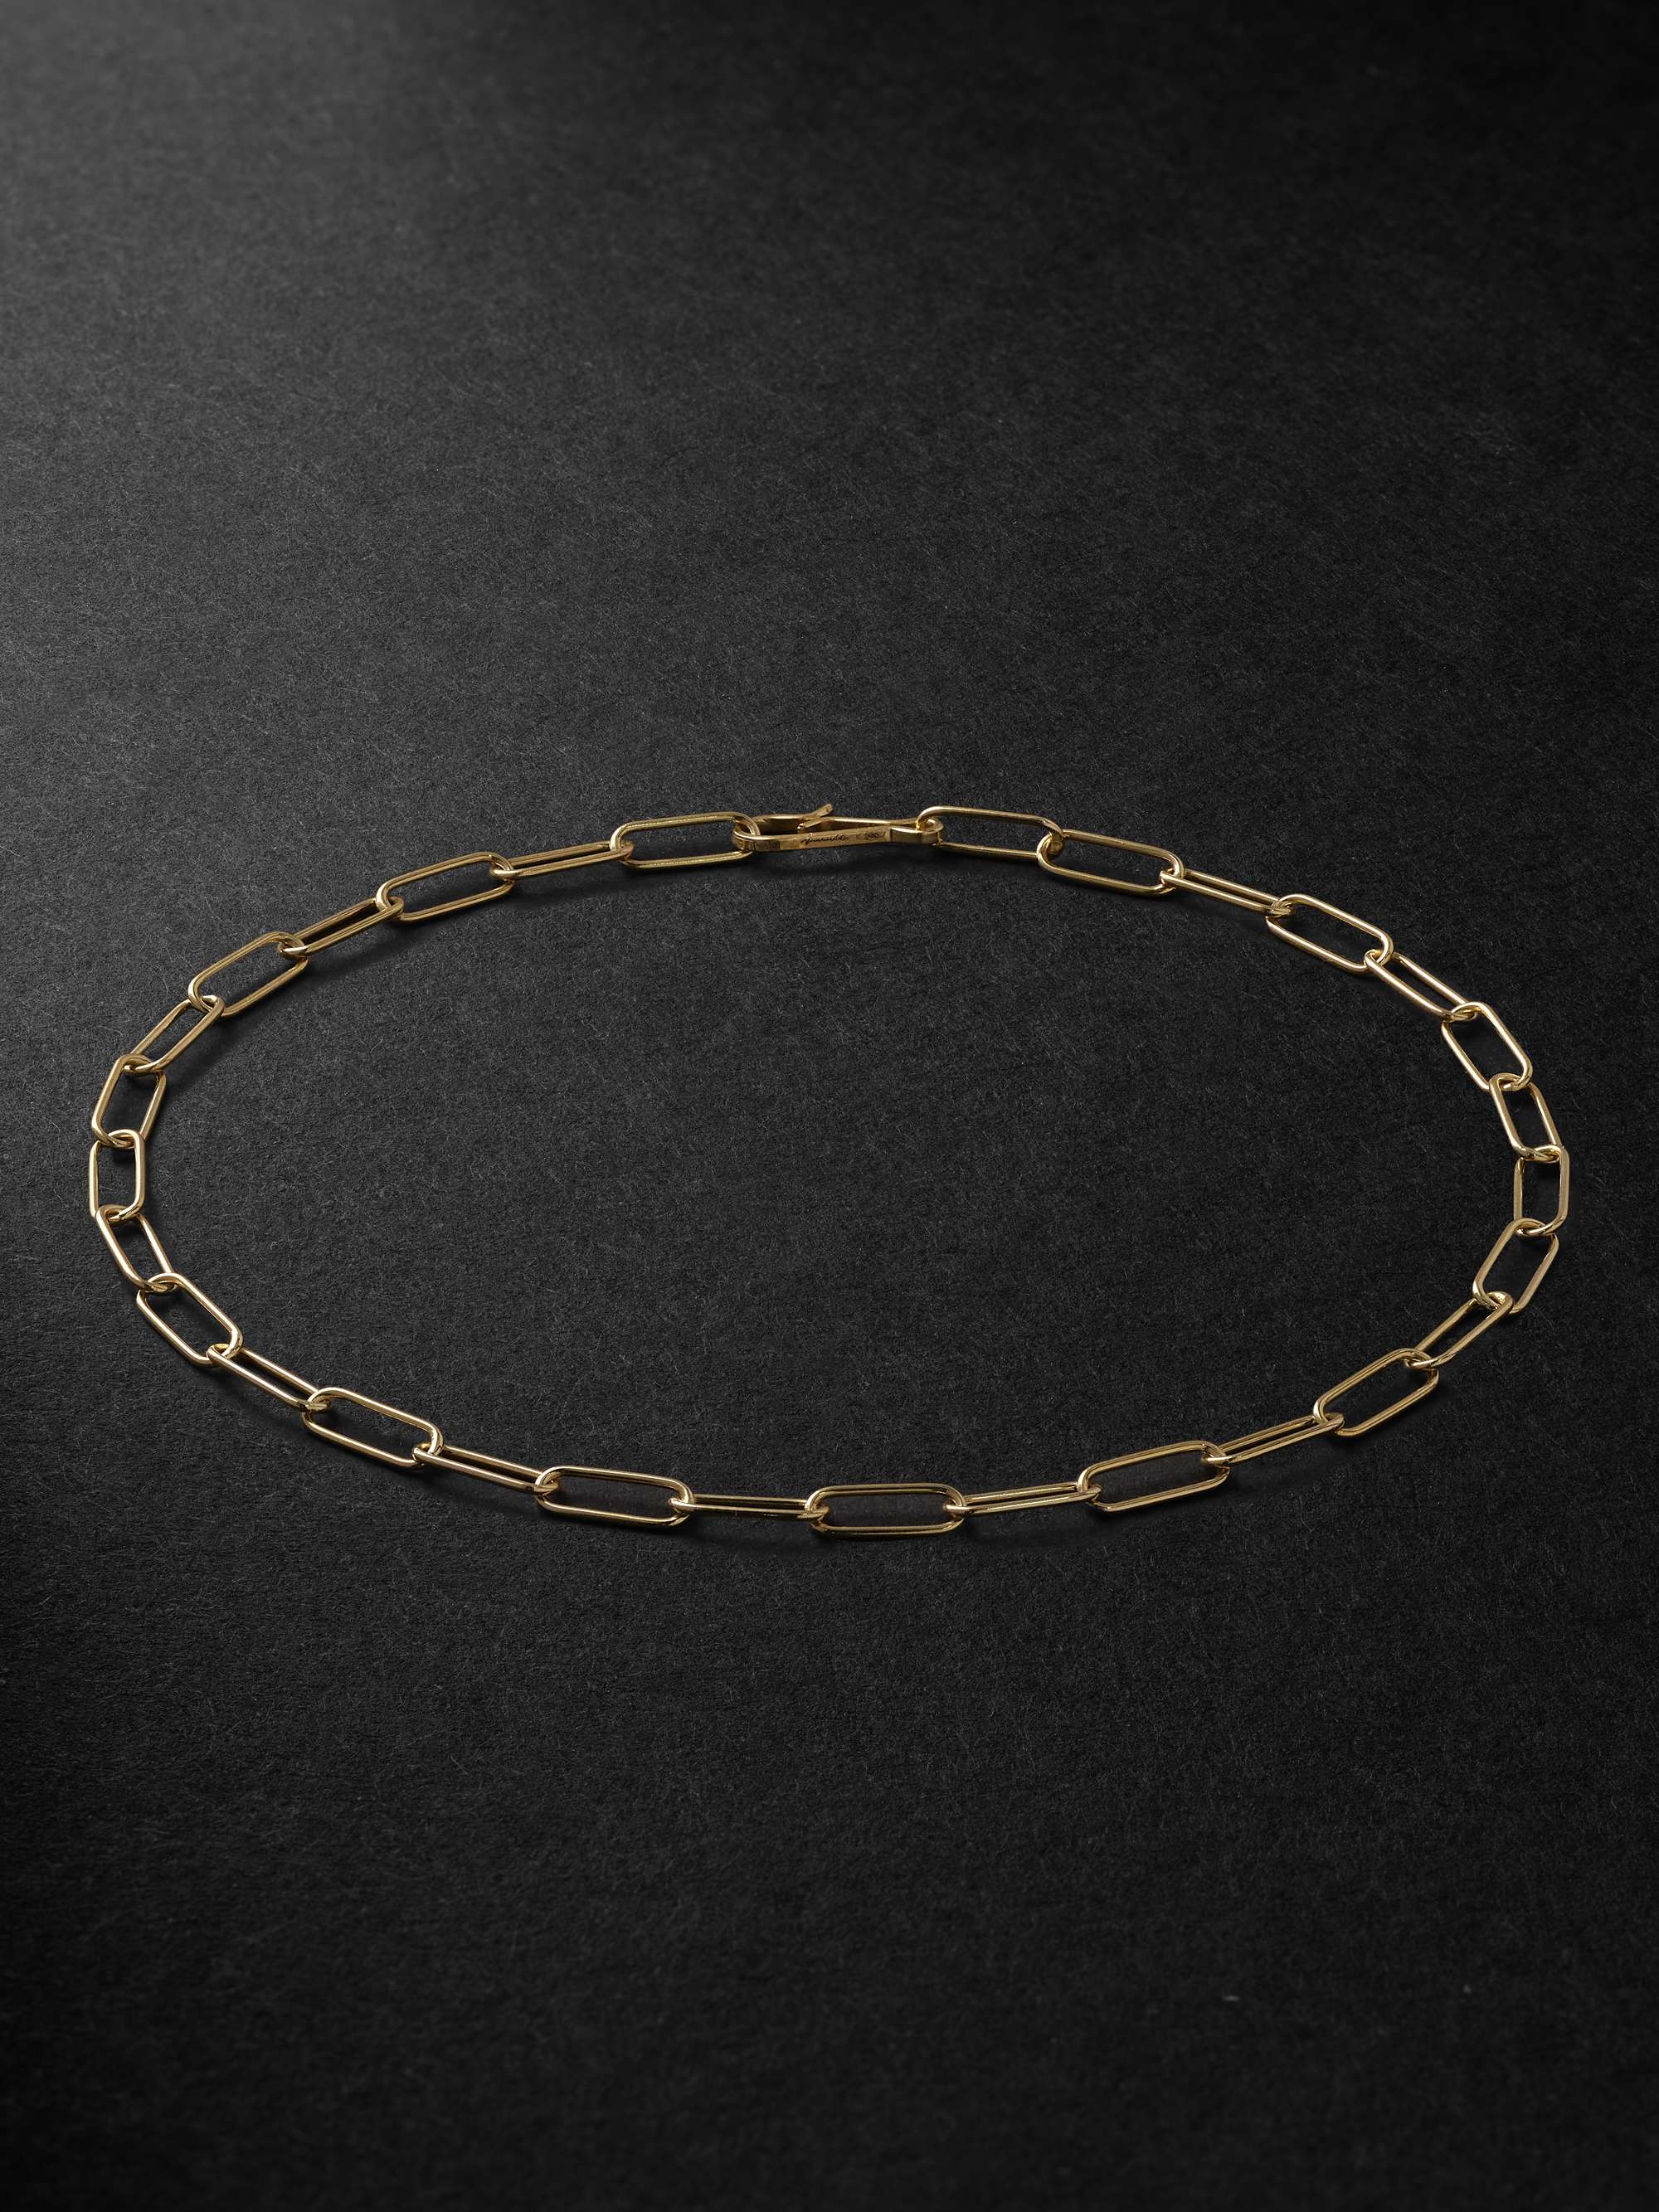 ANNOUSHKA Gold Chain Bracelet